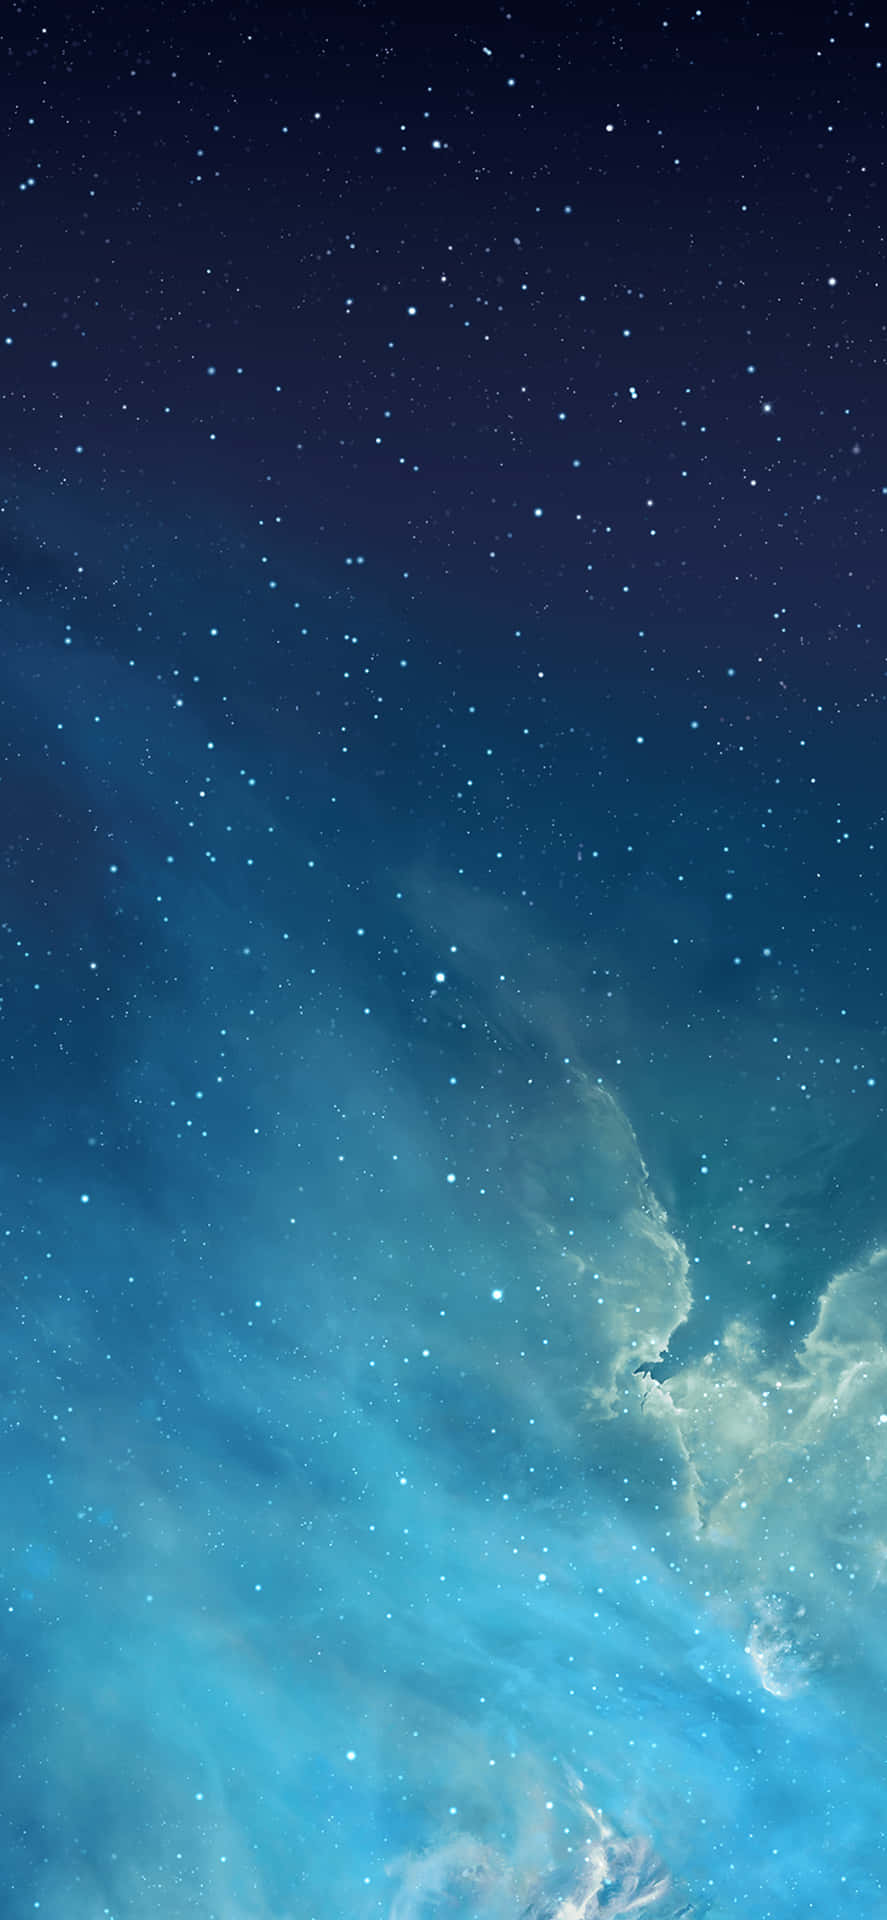 Iphone5s Mit Galaxy Und Sternen Wallpaper